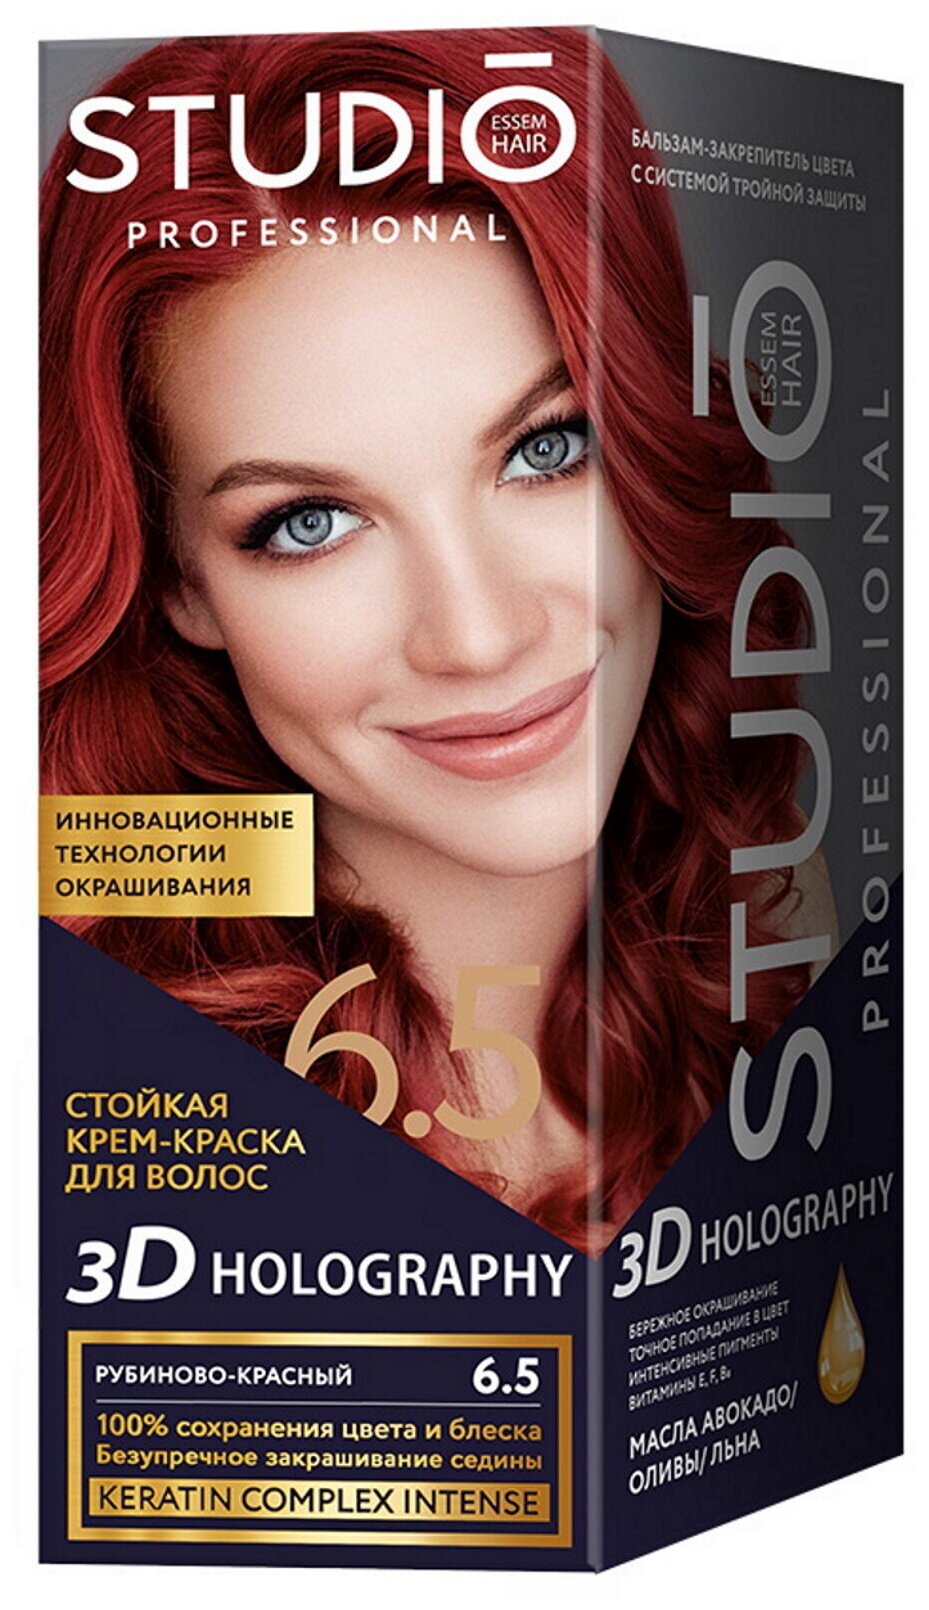 Комплект 3D HOLOGRAPHY для окрашивания волос STUDIO PROFESSIONAL 6.5 рубиново-красный 2*50+15 мл